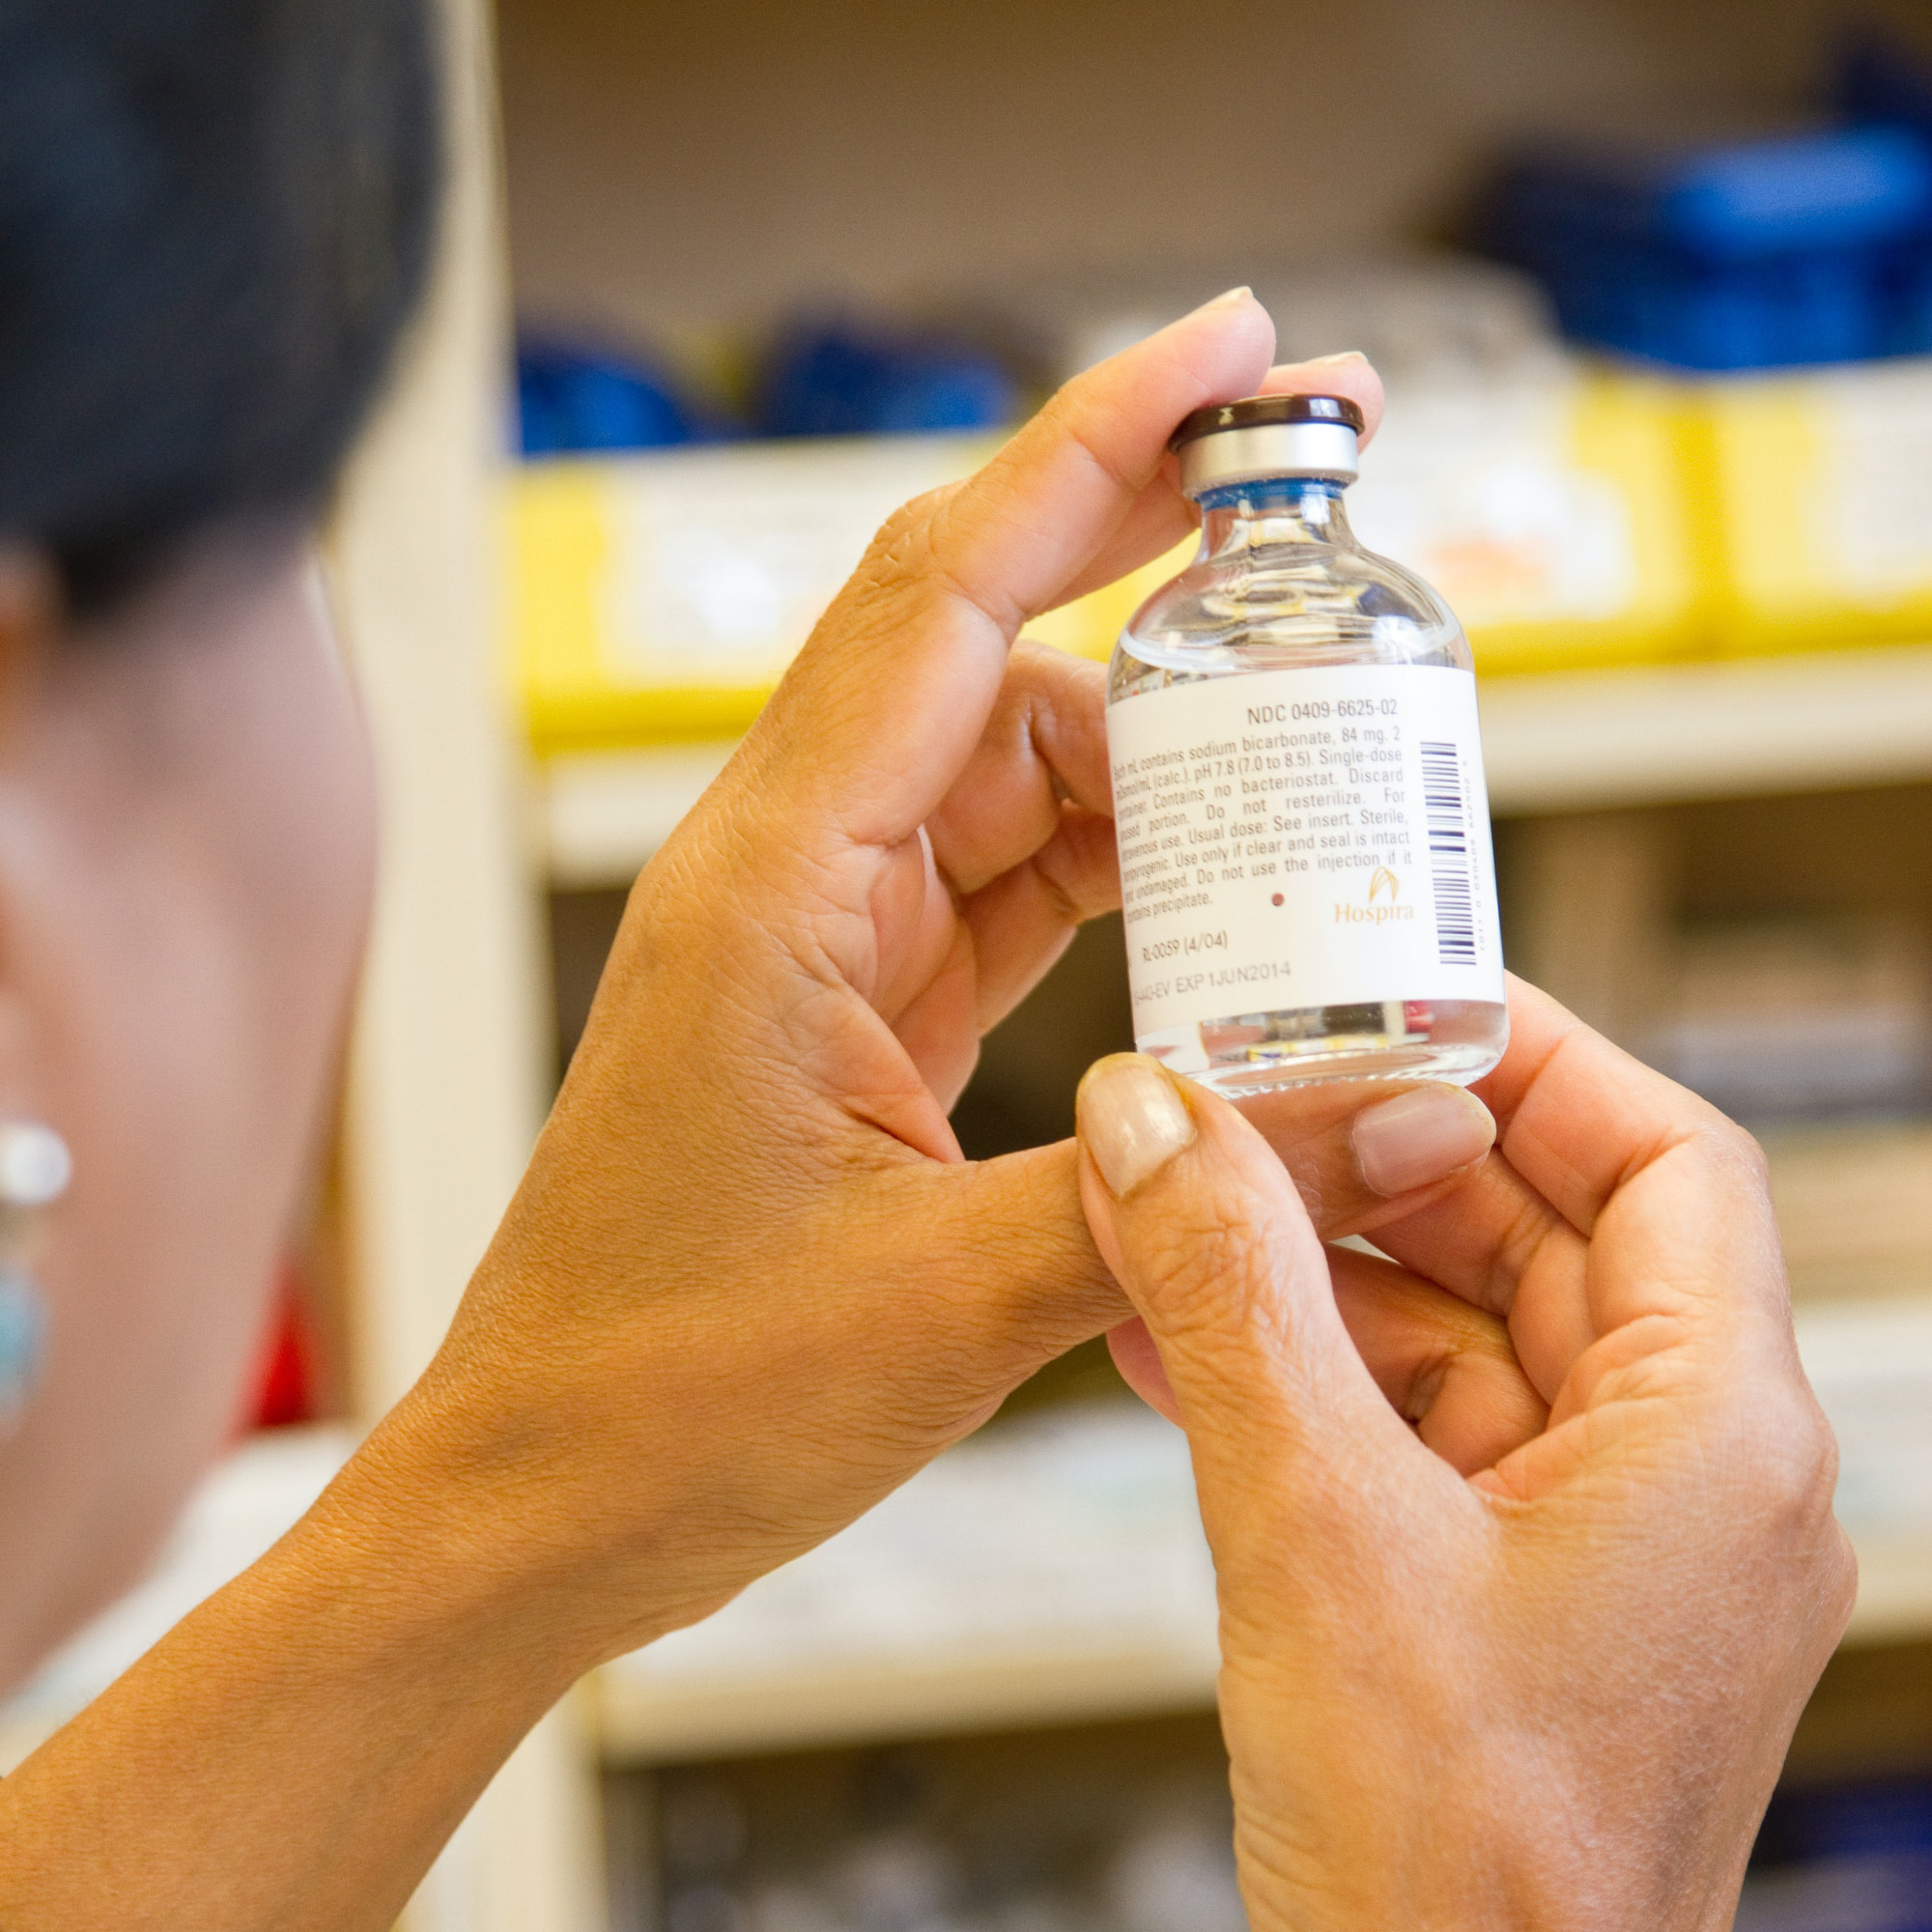 Female pharmacist holding a drug vial